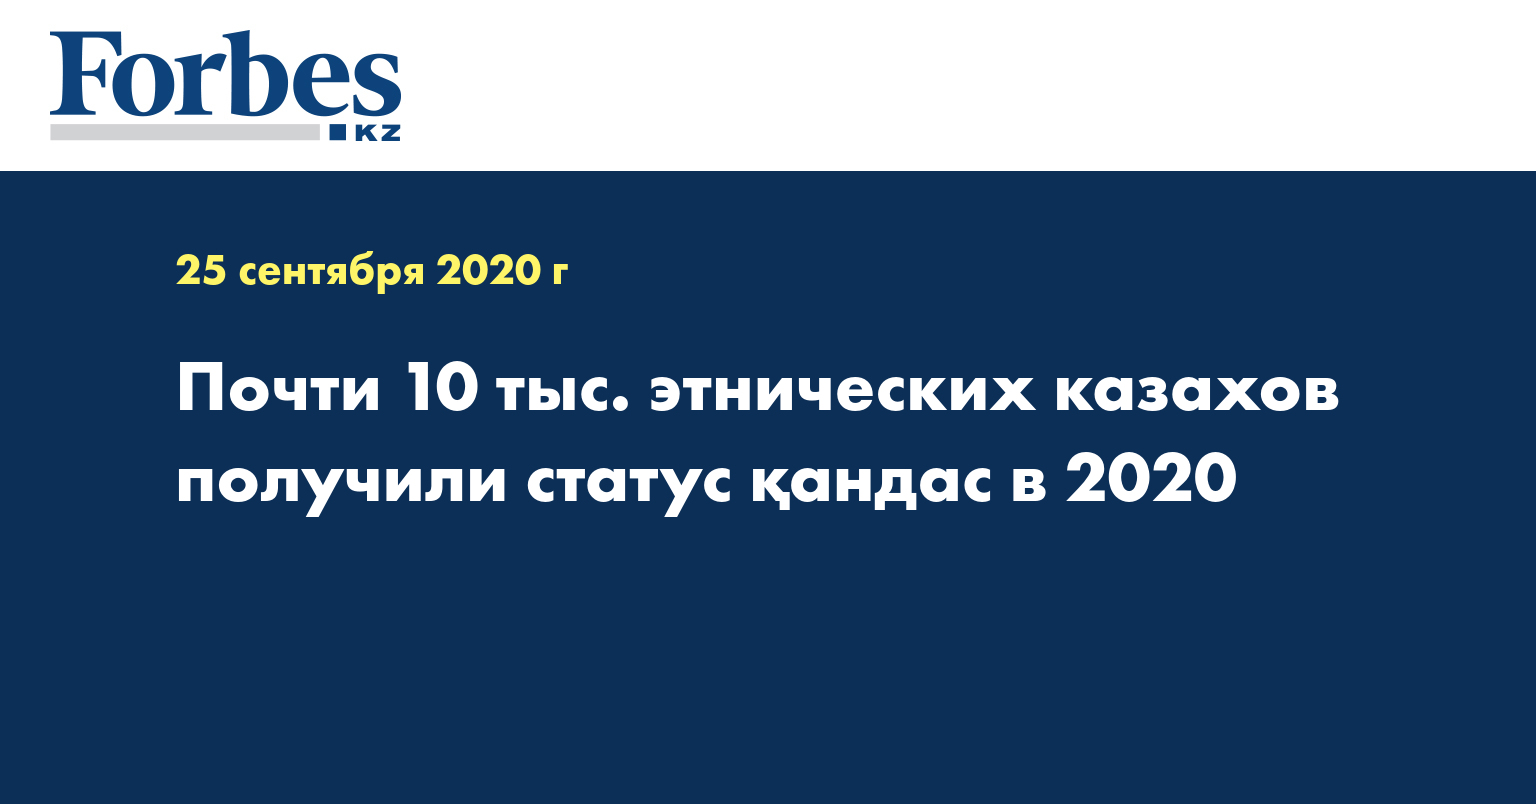 Почти 10 тыс. этнических казахов получили статус қандас в 2020